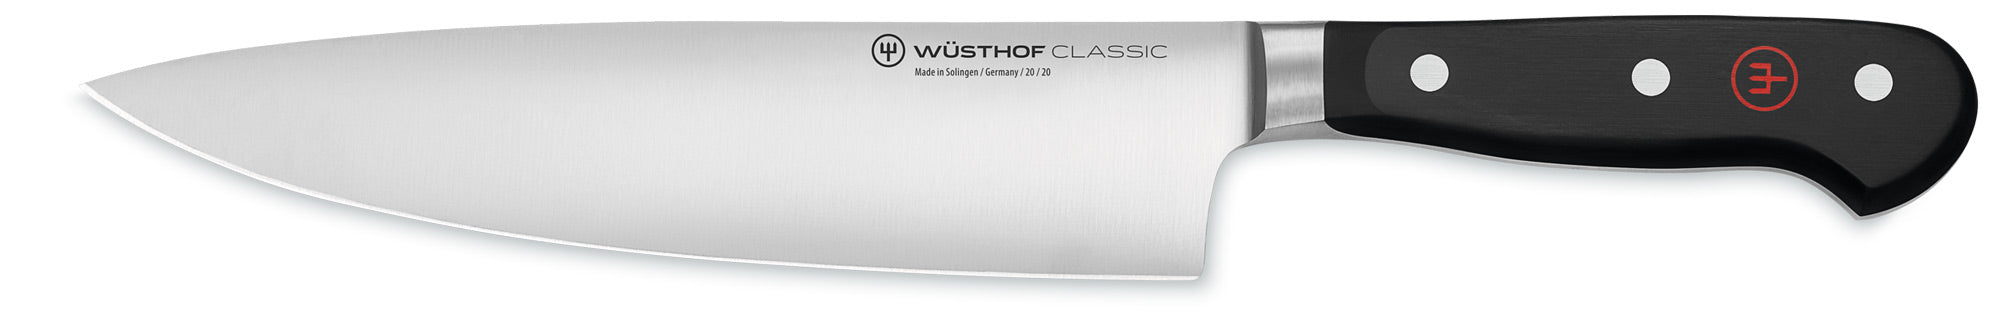 Wusthof 8-inch half-bolster chef knife 4581-20 Canada